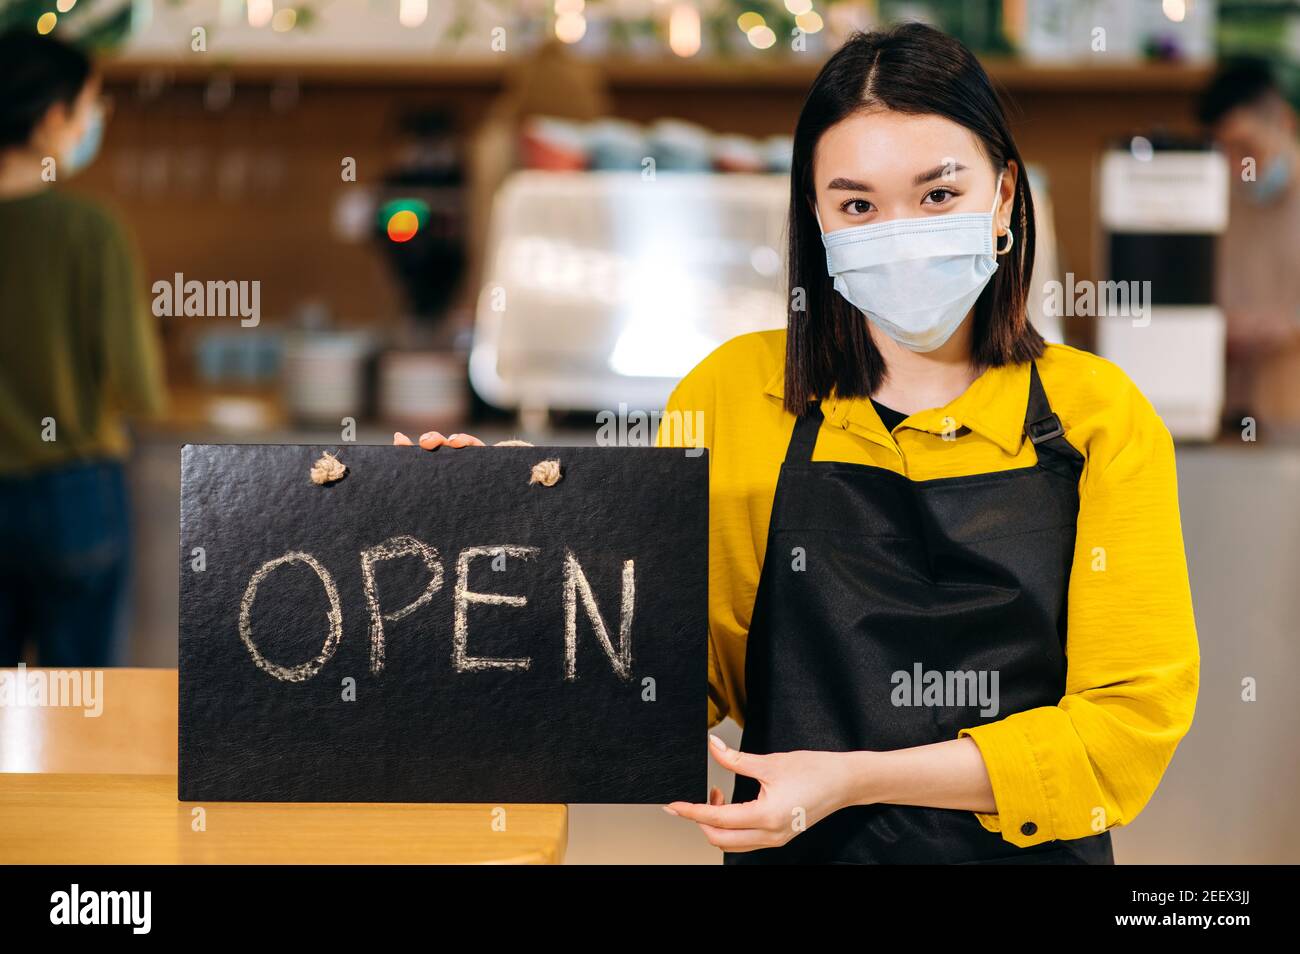 Herzlich Willkommen. Die junge asiatische Kellnerin steht im Innenbereich eines Restaurants oder Cafés mit einer schützenden medizinischen Maske und einer schwarzen Schürze und hält das Schild OFFEN. Unterstützung des Konzepts für kleine Unternehmen Stockfoto